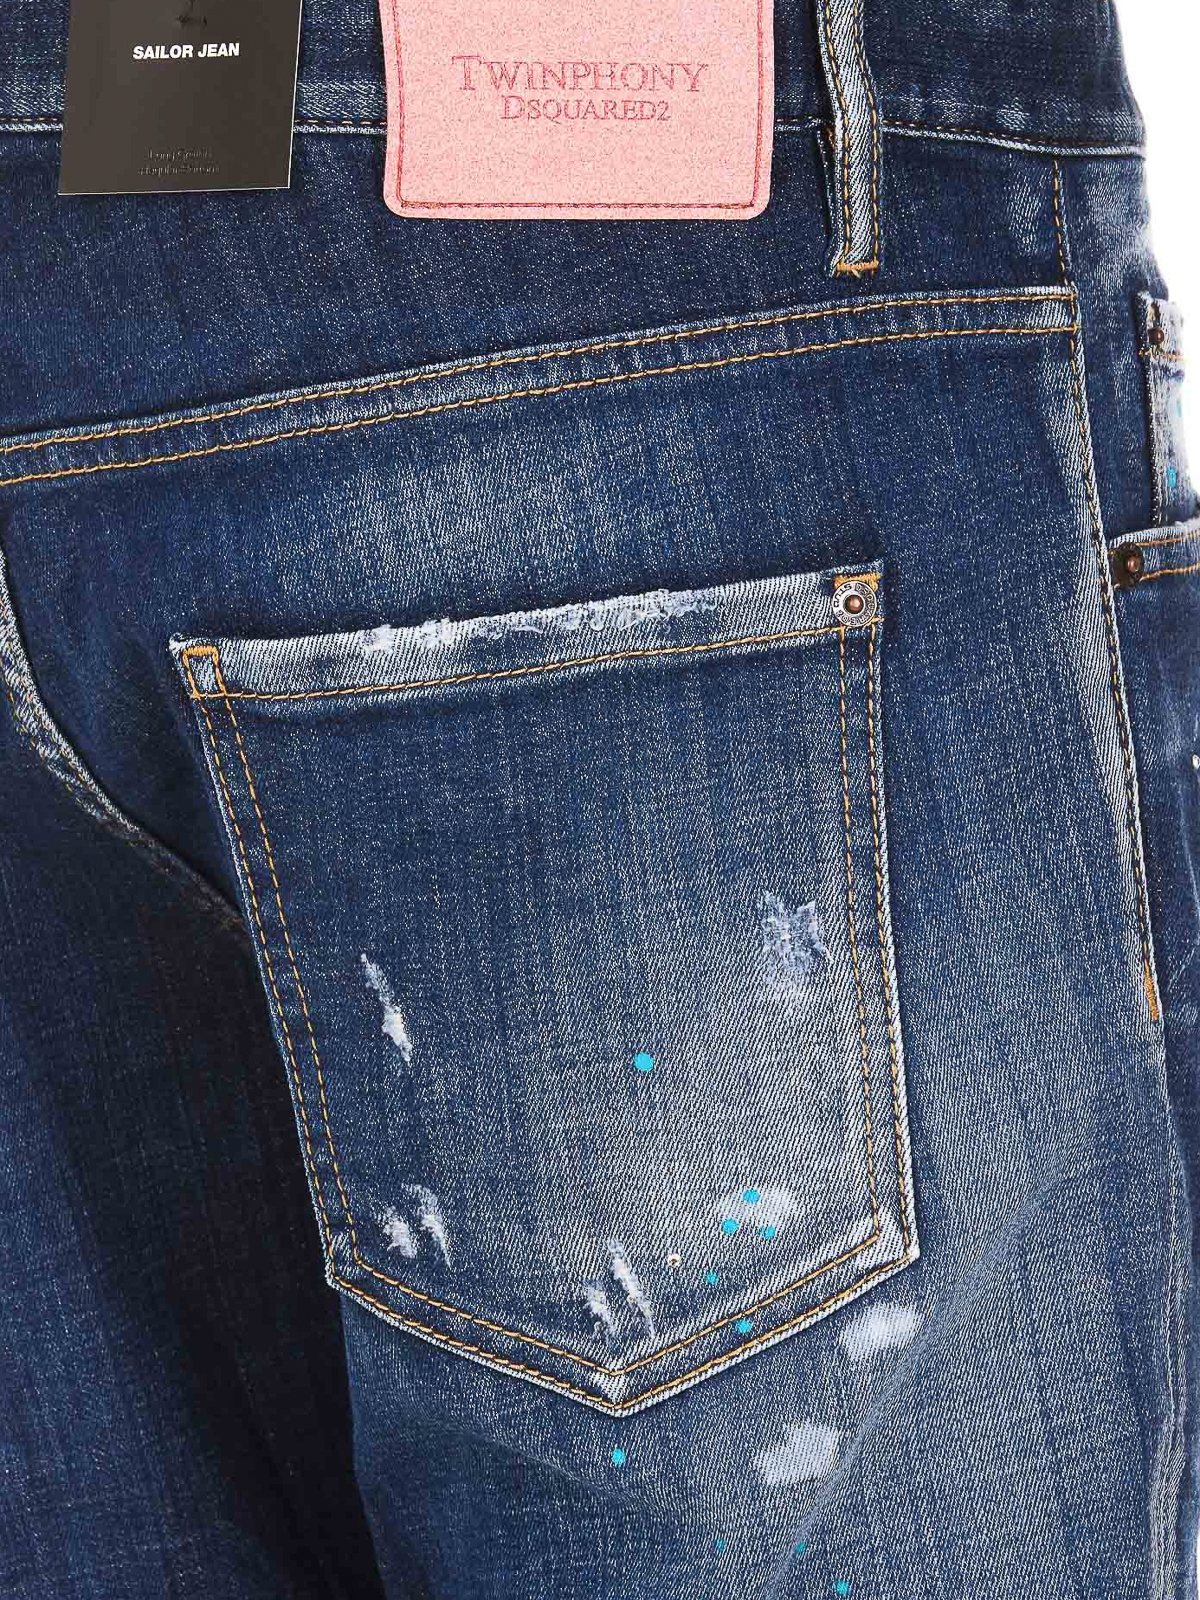 Dsquared2 Sailor Cotton Denim Jeans In Blue